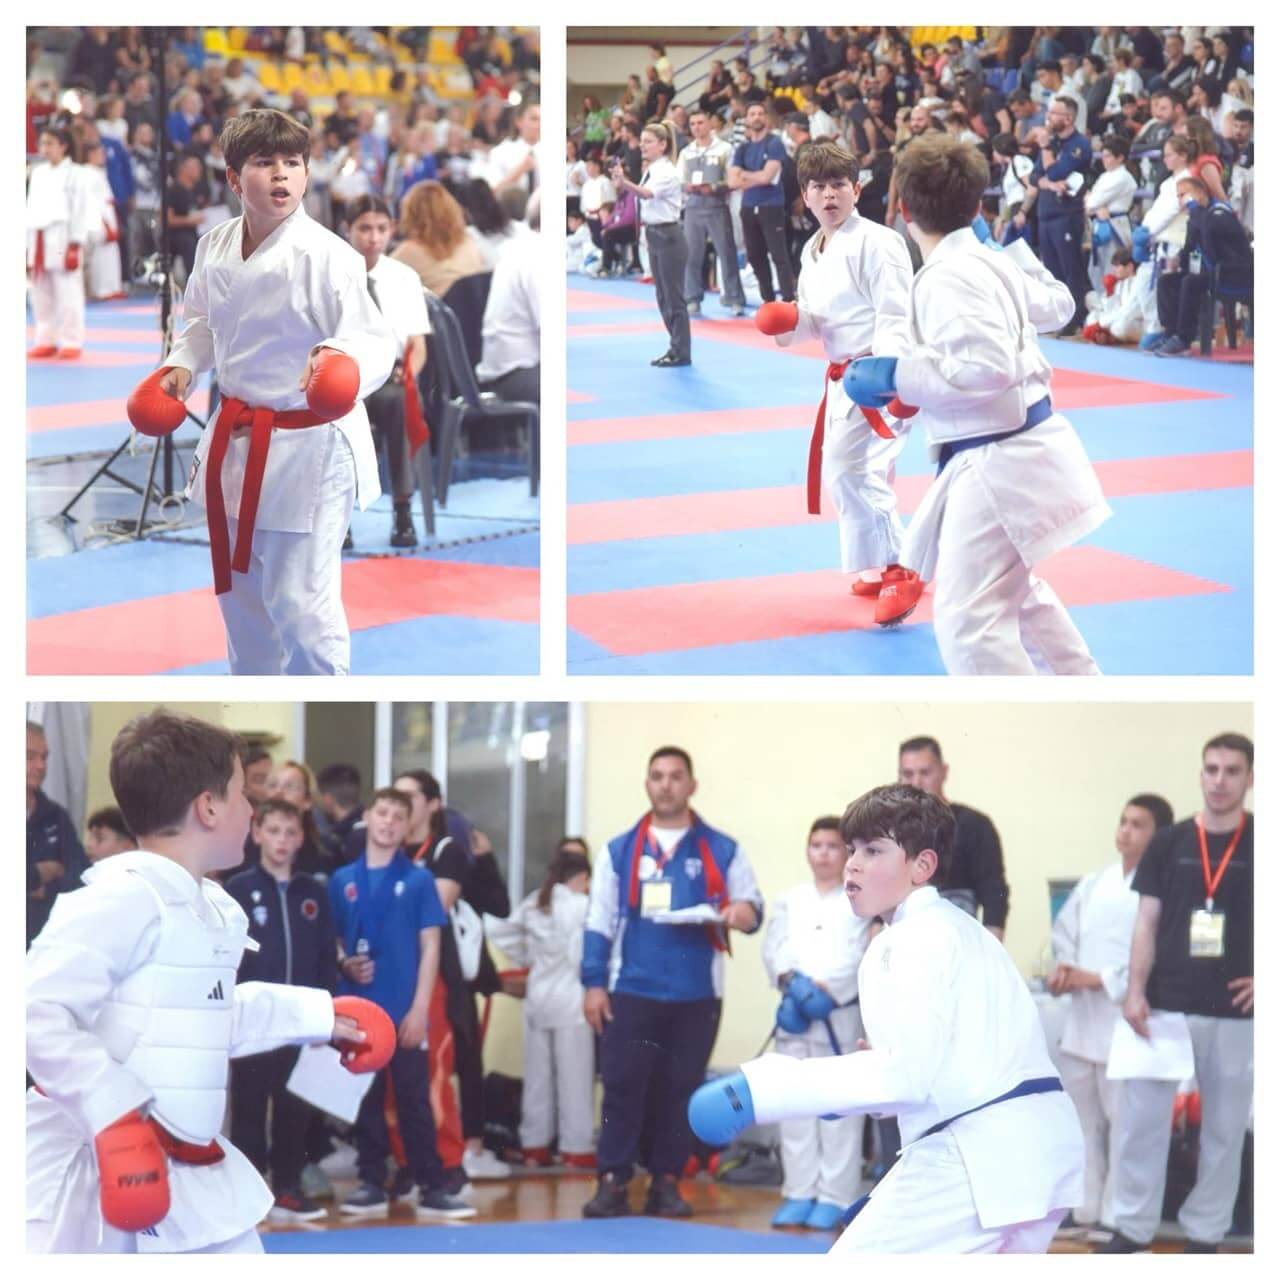 victorious-karate-psachna-panellinio-protathlima-paidon-korasidon-2024-4